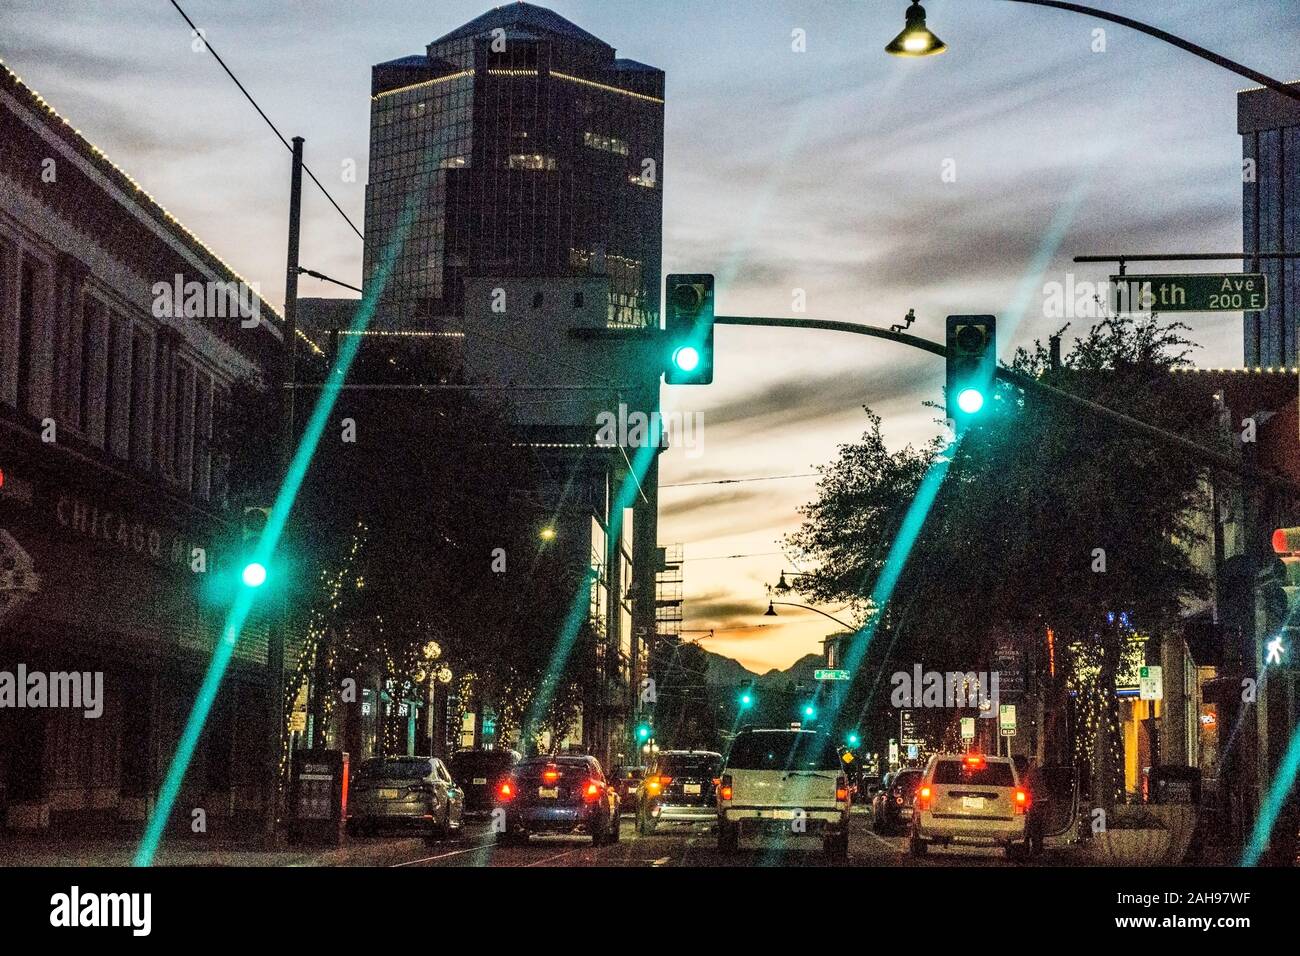 Die Congress Street Downtown Tucson mit Dämmerung glühen in Himmel & festliche Weihnachtsbeleuchtung auf Bäume als grüne Lichter release Verkehr für Interstate 10 angeführt Stockfoto